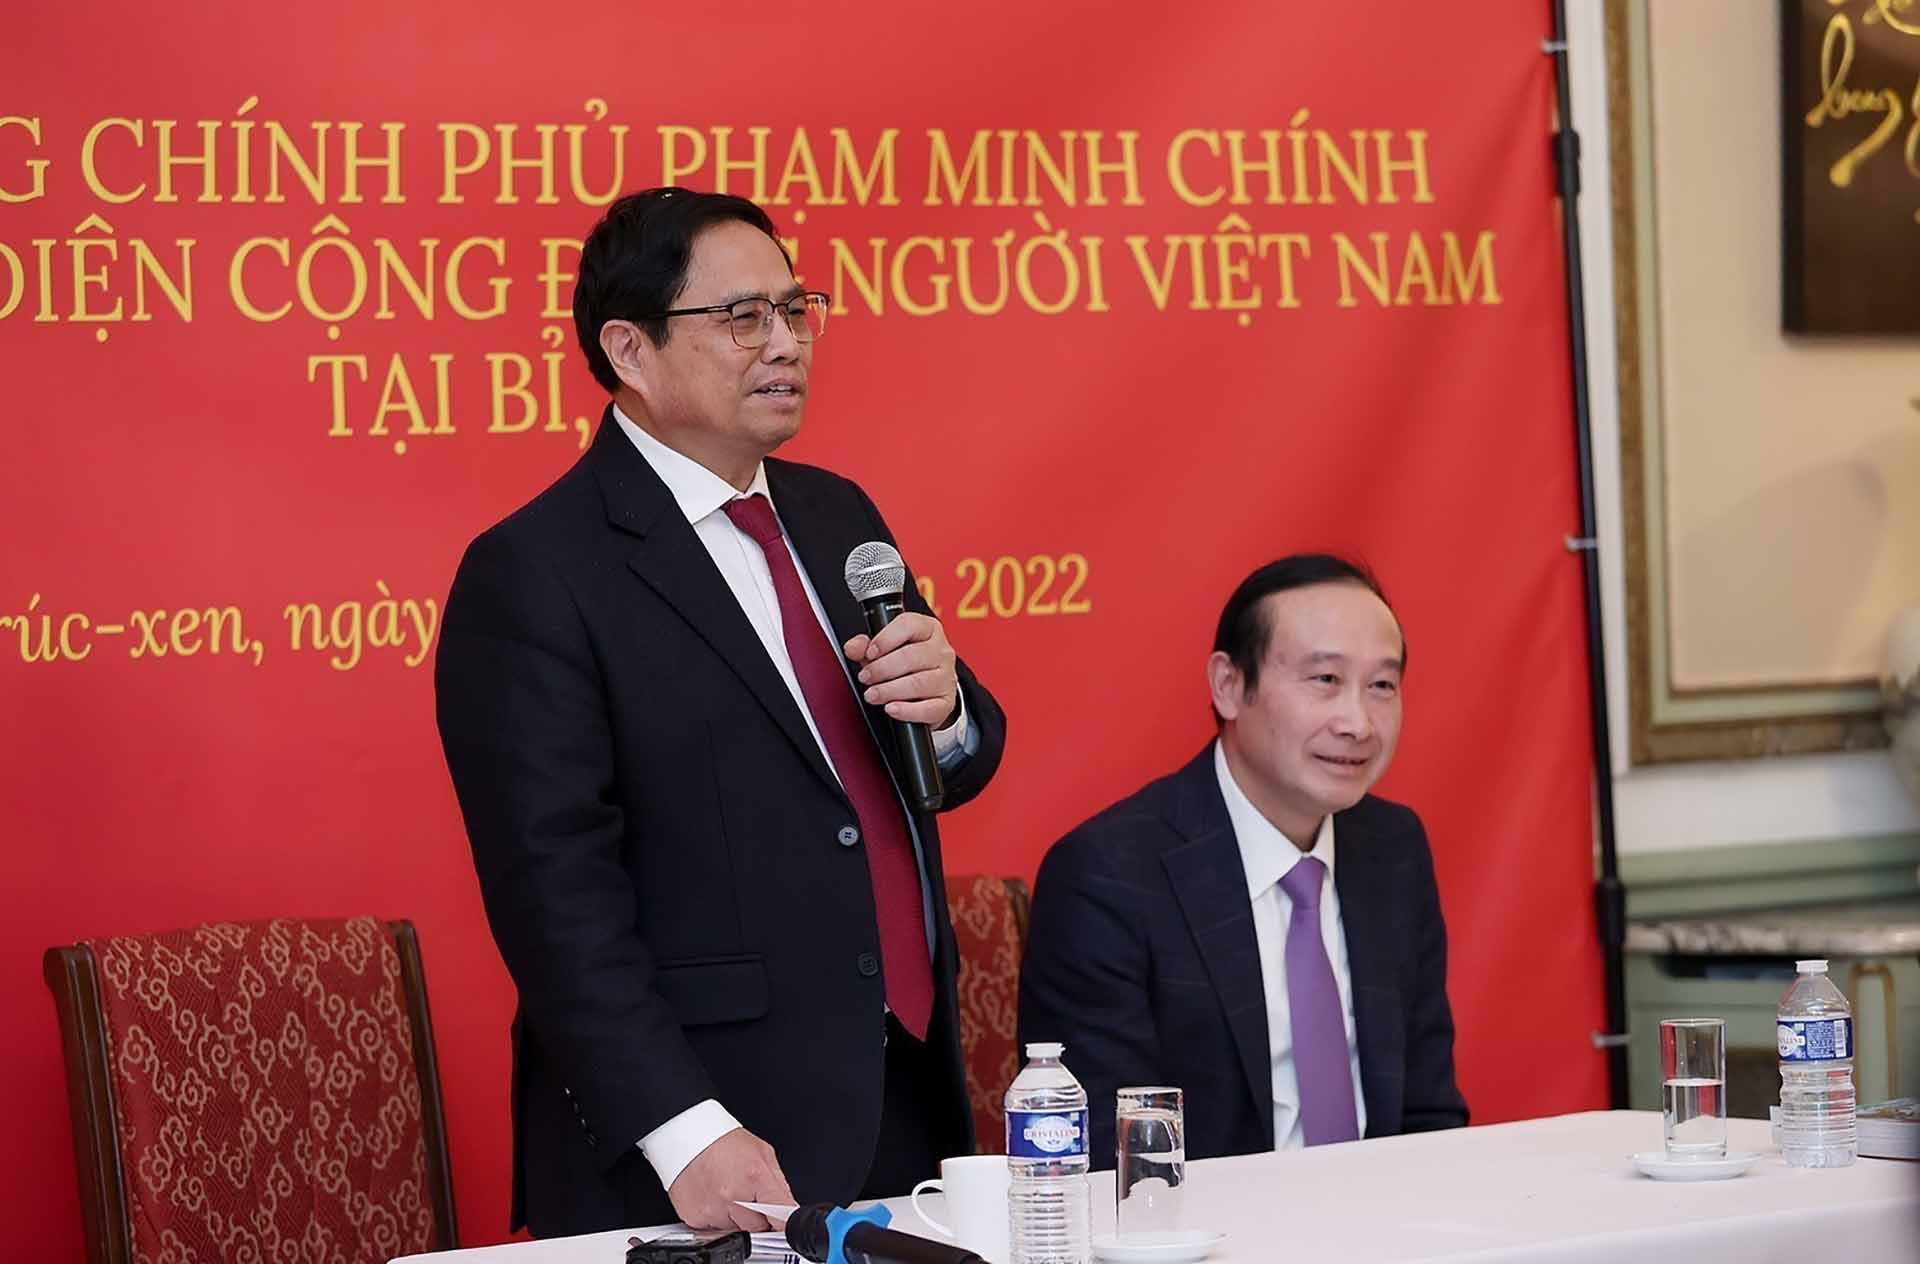 Cộng đồng người Việt Nam tại Bỉ là cầu nối thúc đẩy quan hệ hữu nghị giữa hai nước